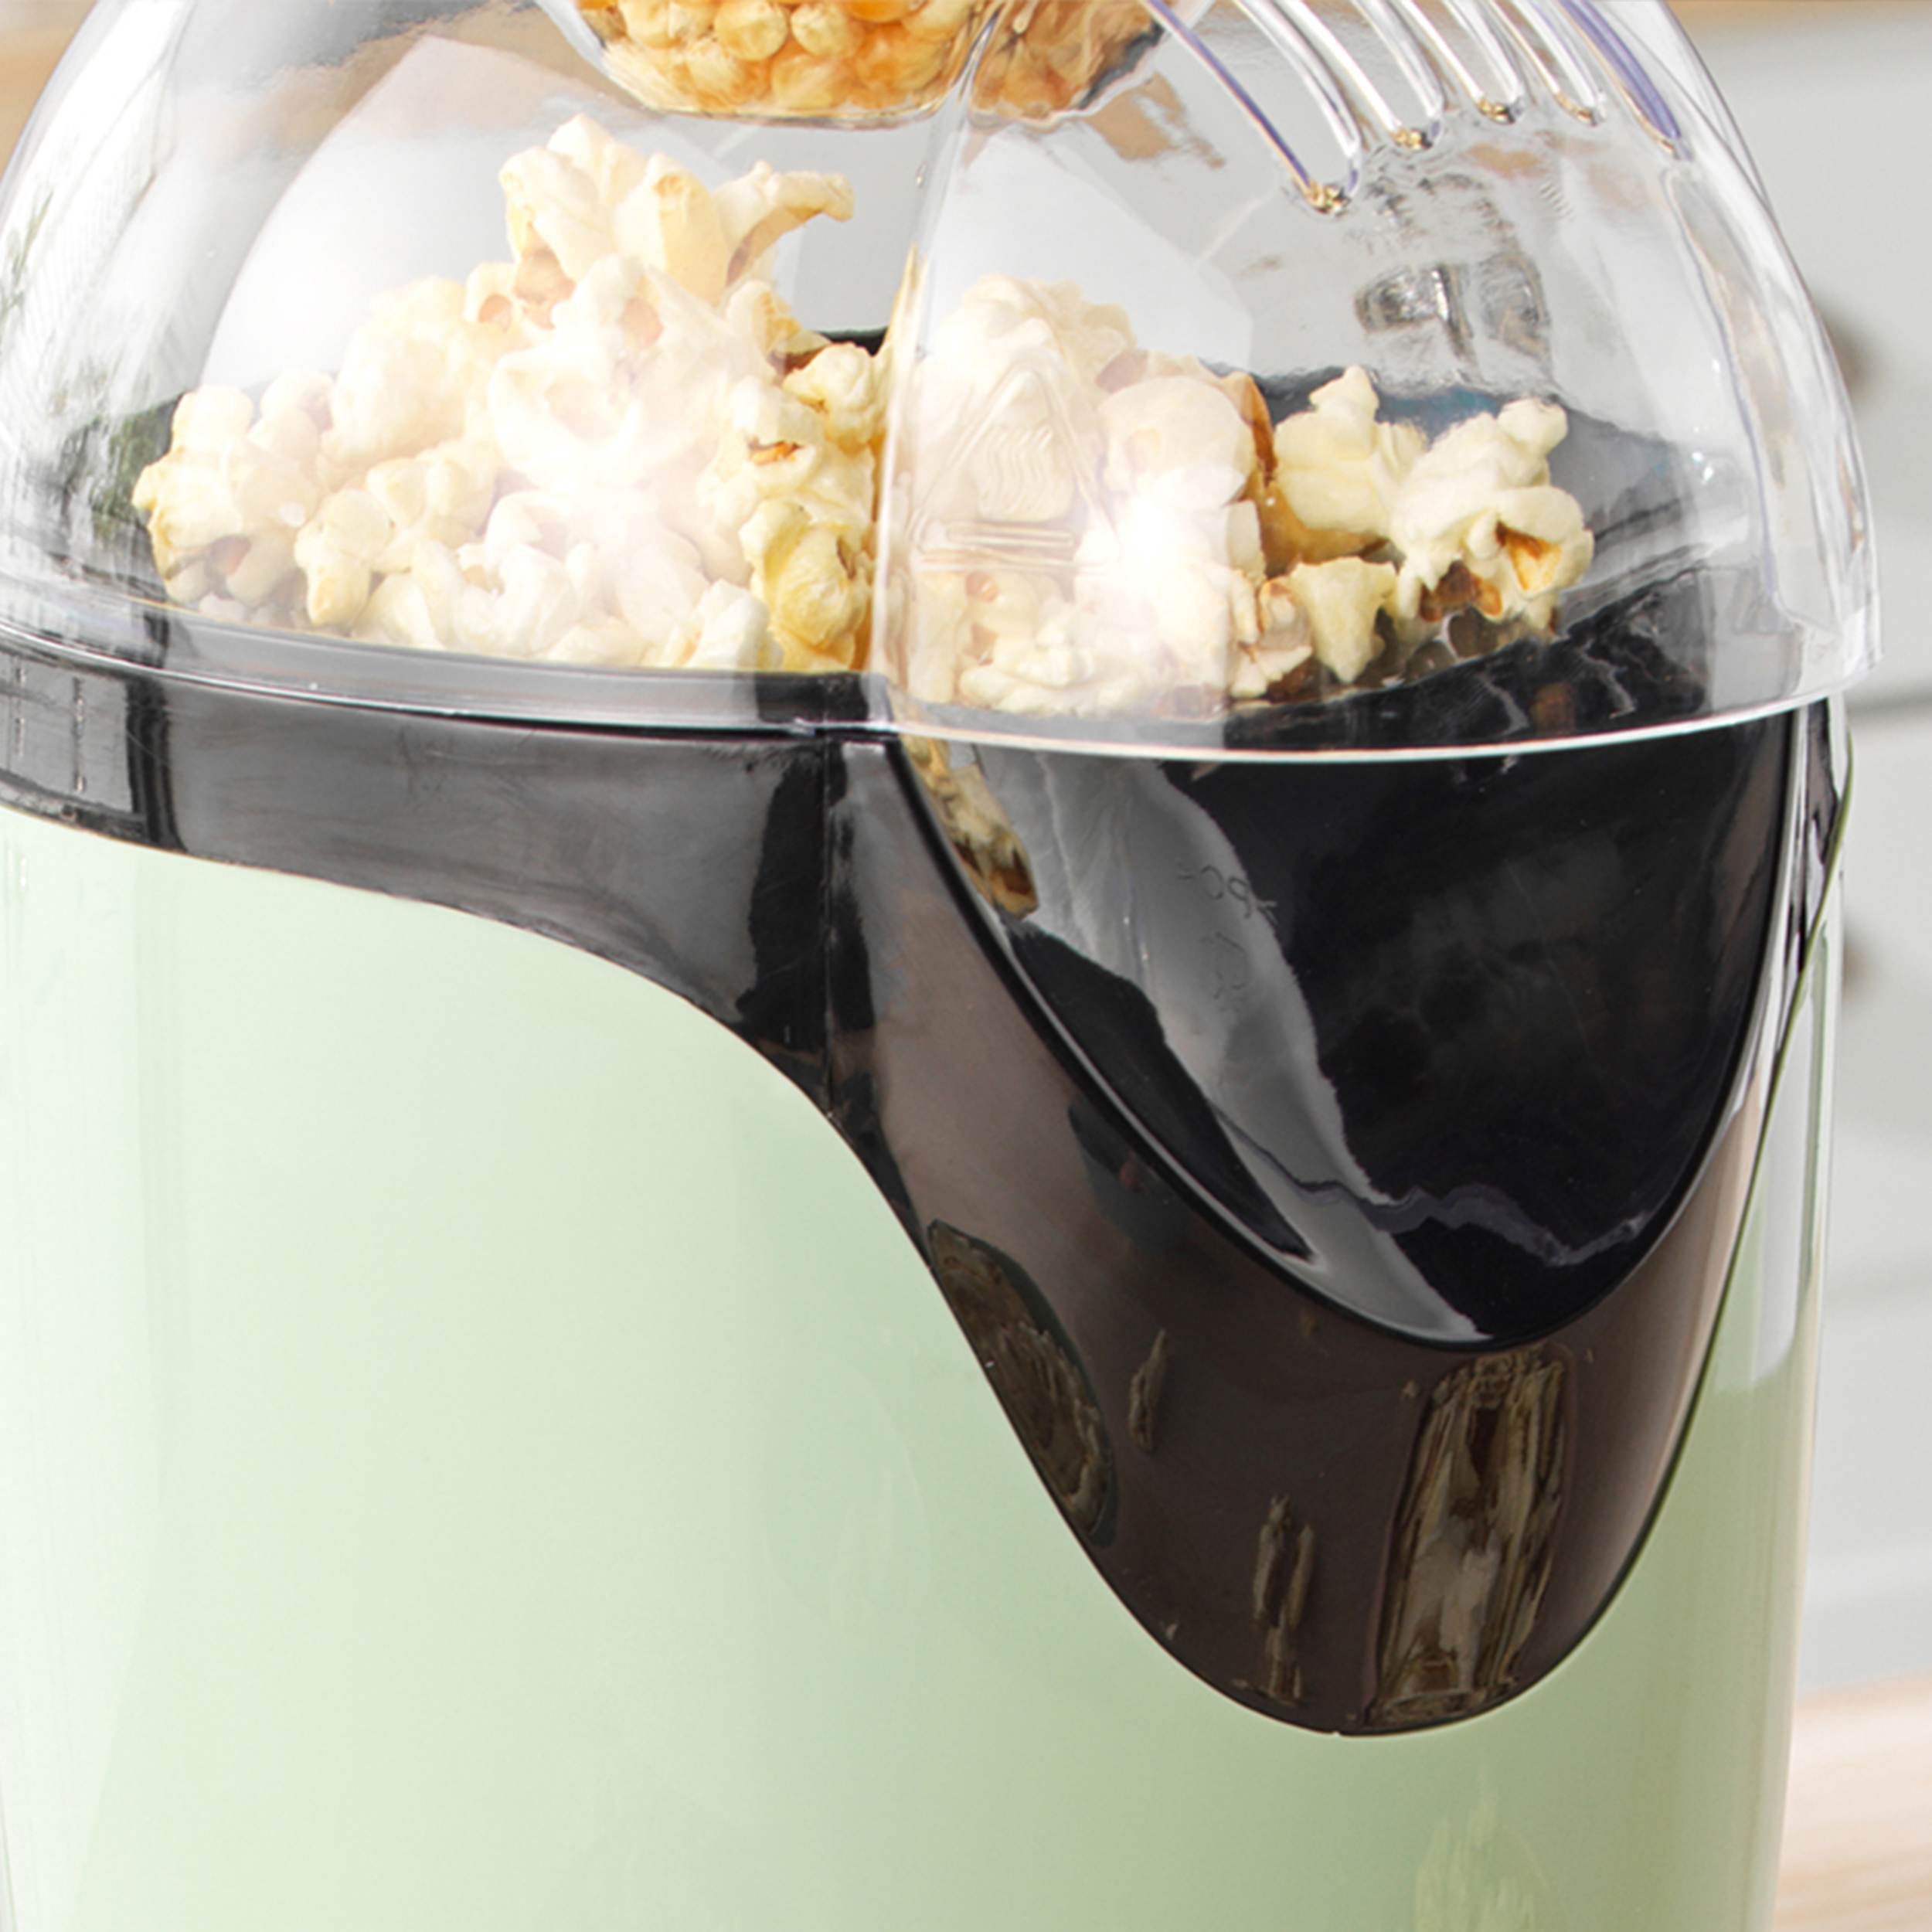 PETRA Retro Popcornmaschine ohne - oder Popcorn Butter - Popcorn - Öl - Messbecher grün 1200W Heißluft maker Popcornmaschine